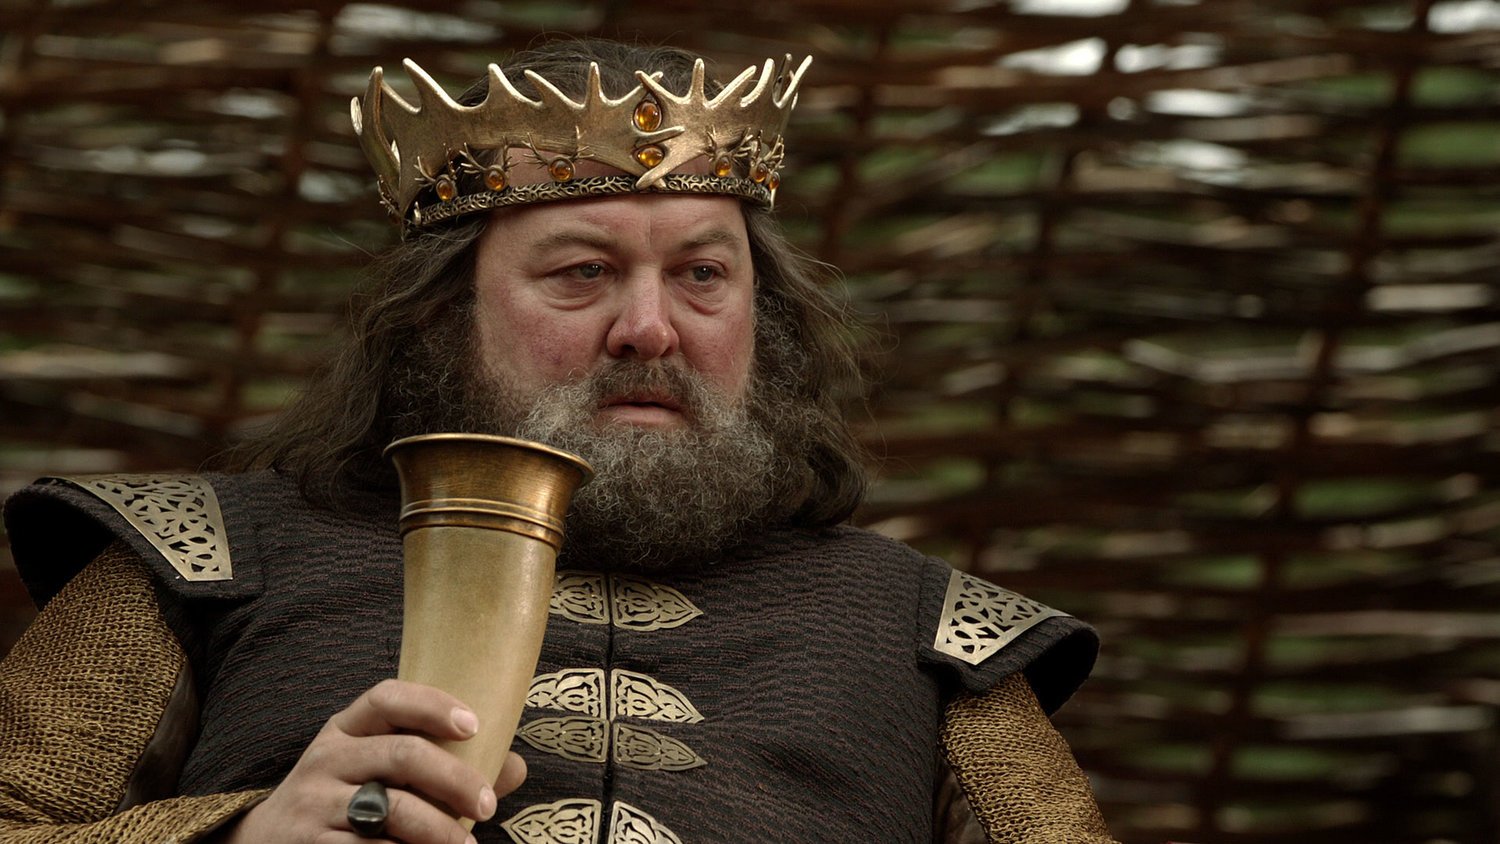 Robert Baratheon segurando uma taça na mão vestido com uma coroa na cabeça